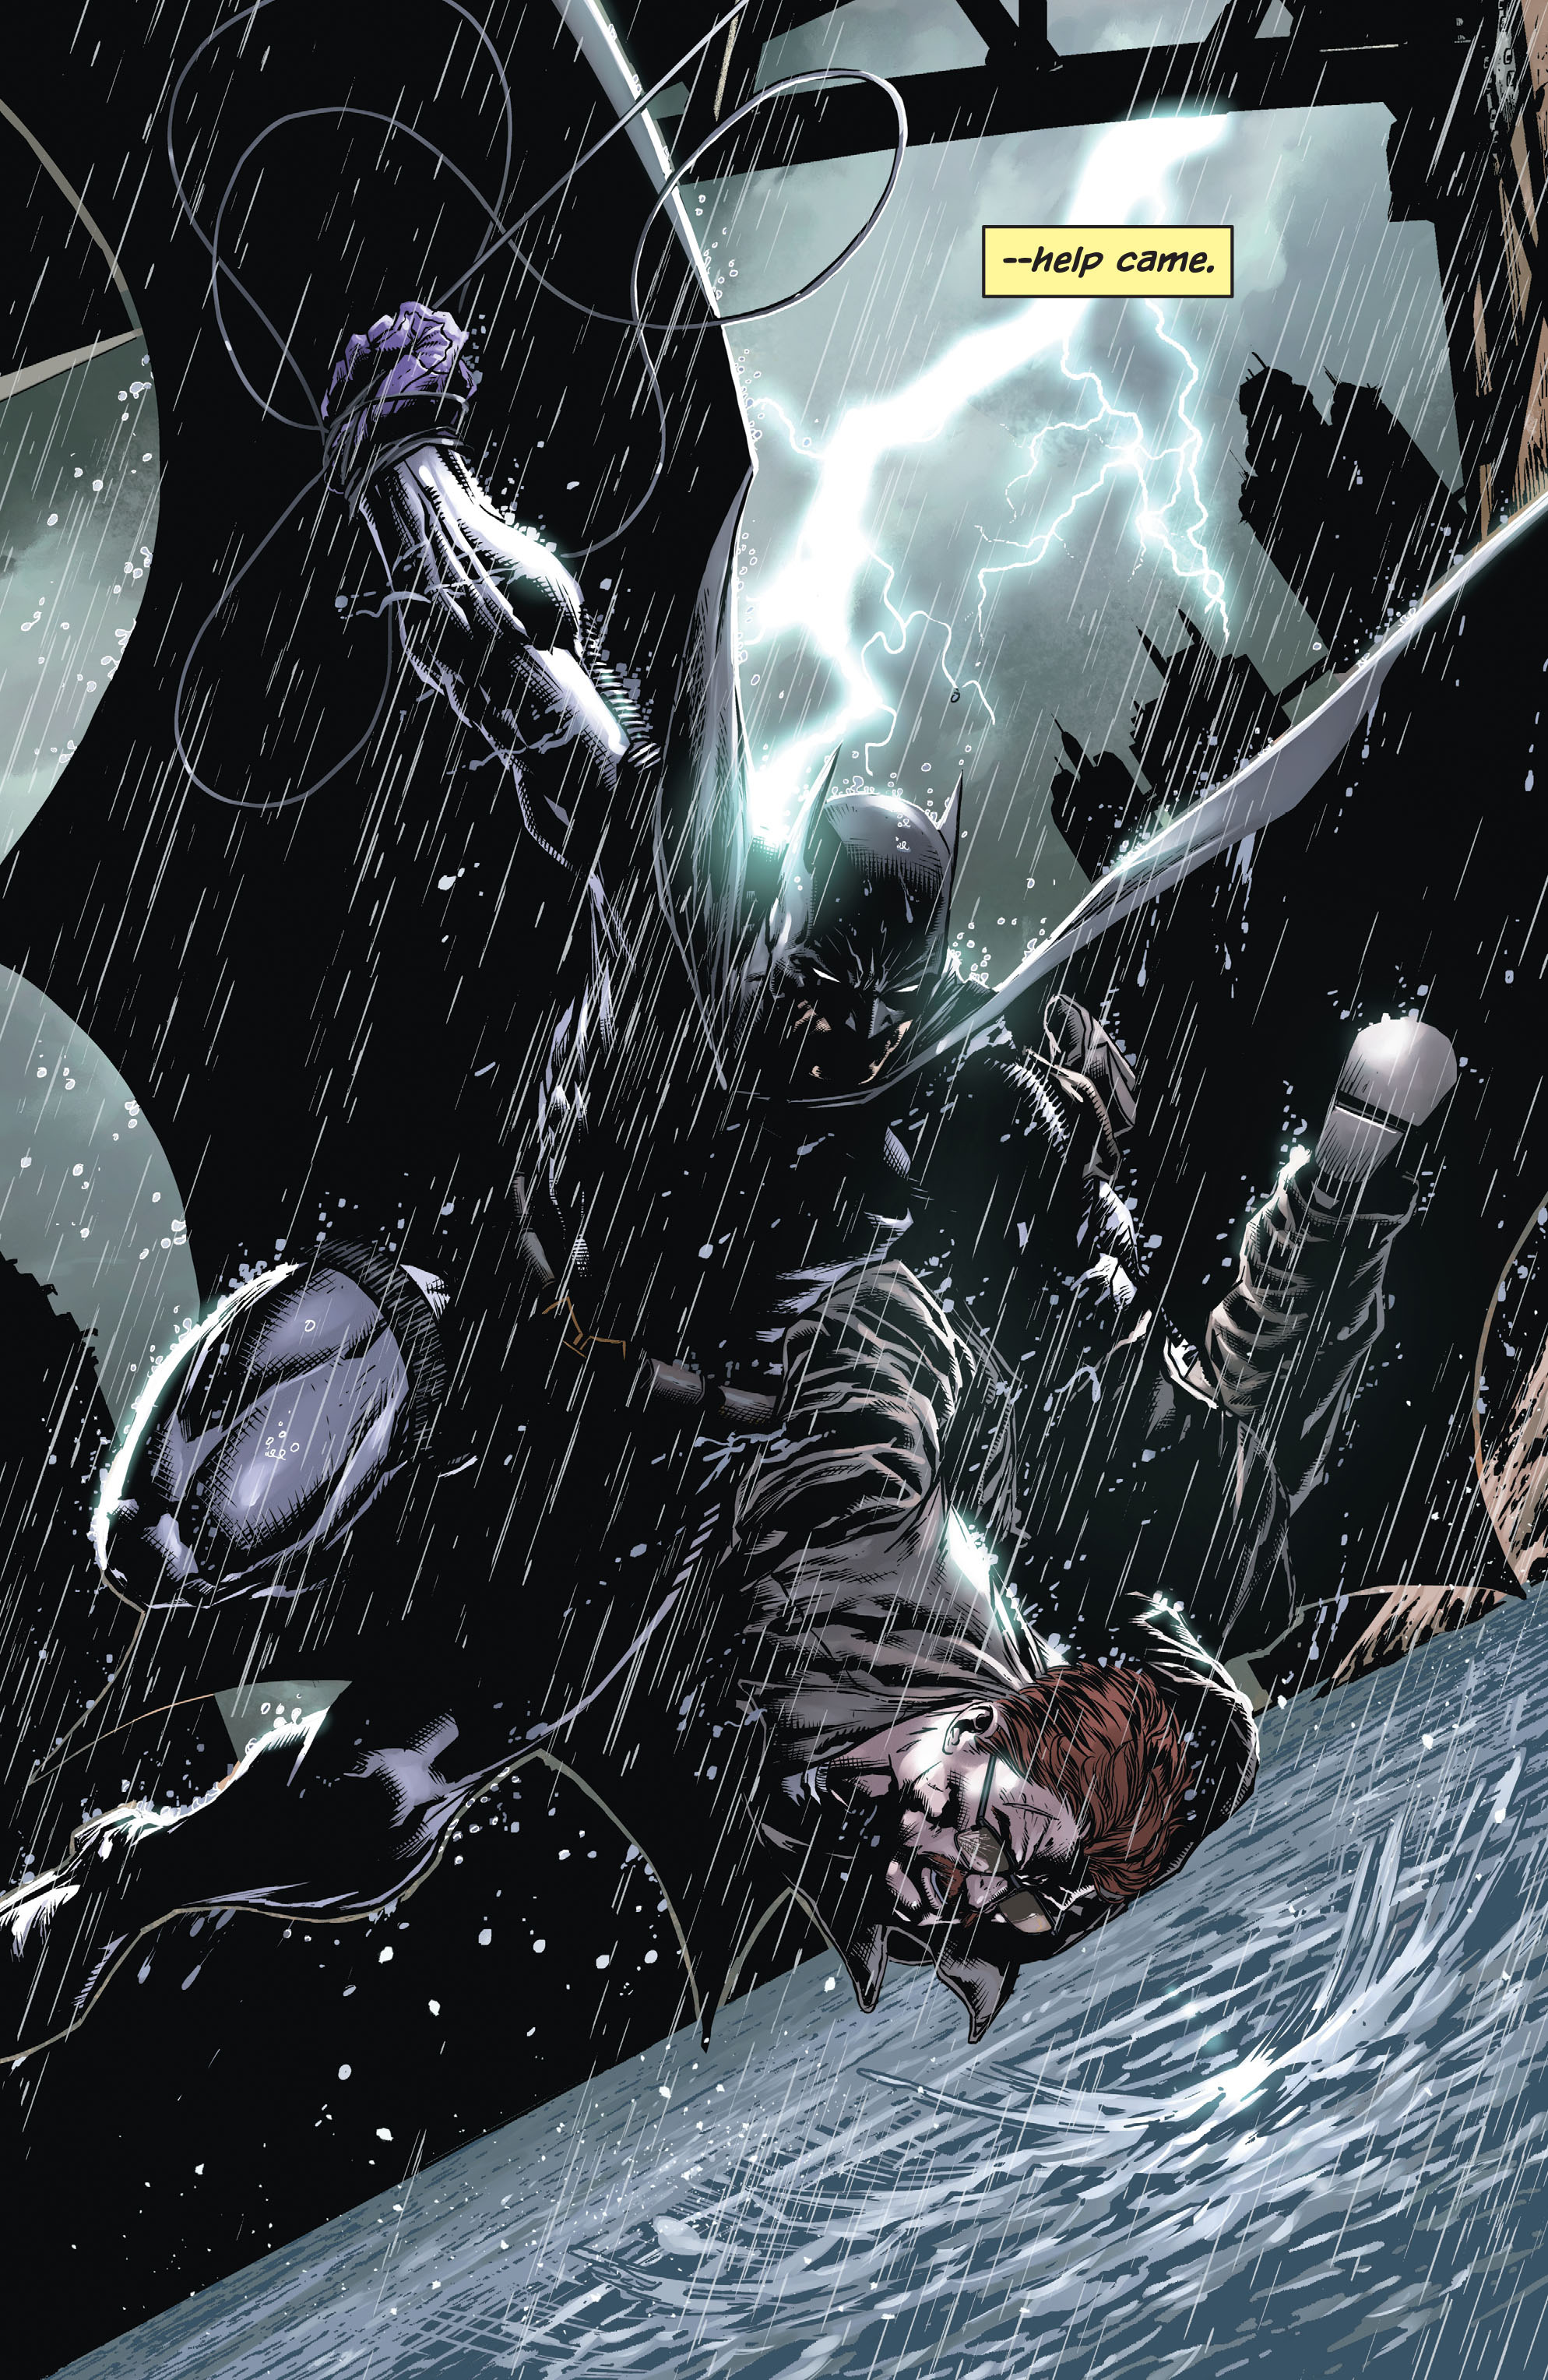 Read online Batman: Detective Comics comic -  Issue # TPB 5 - 27